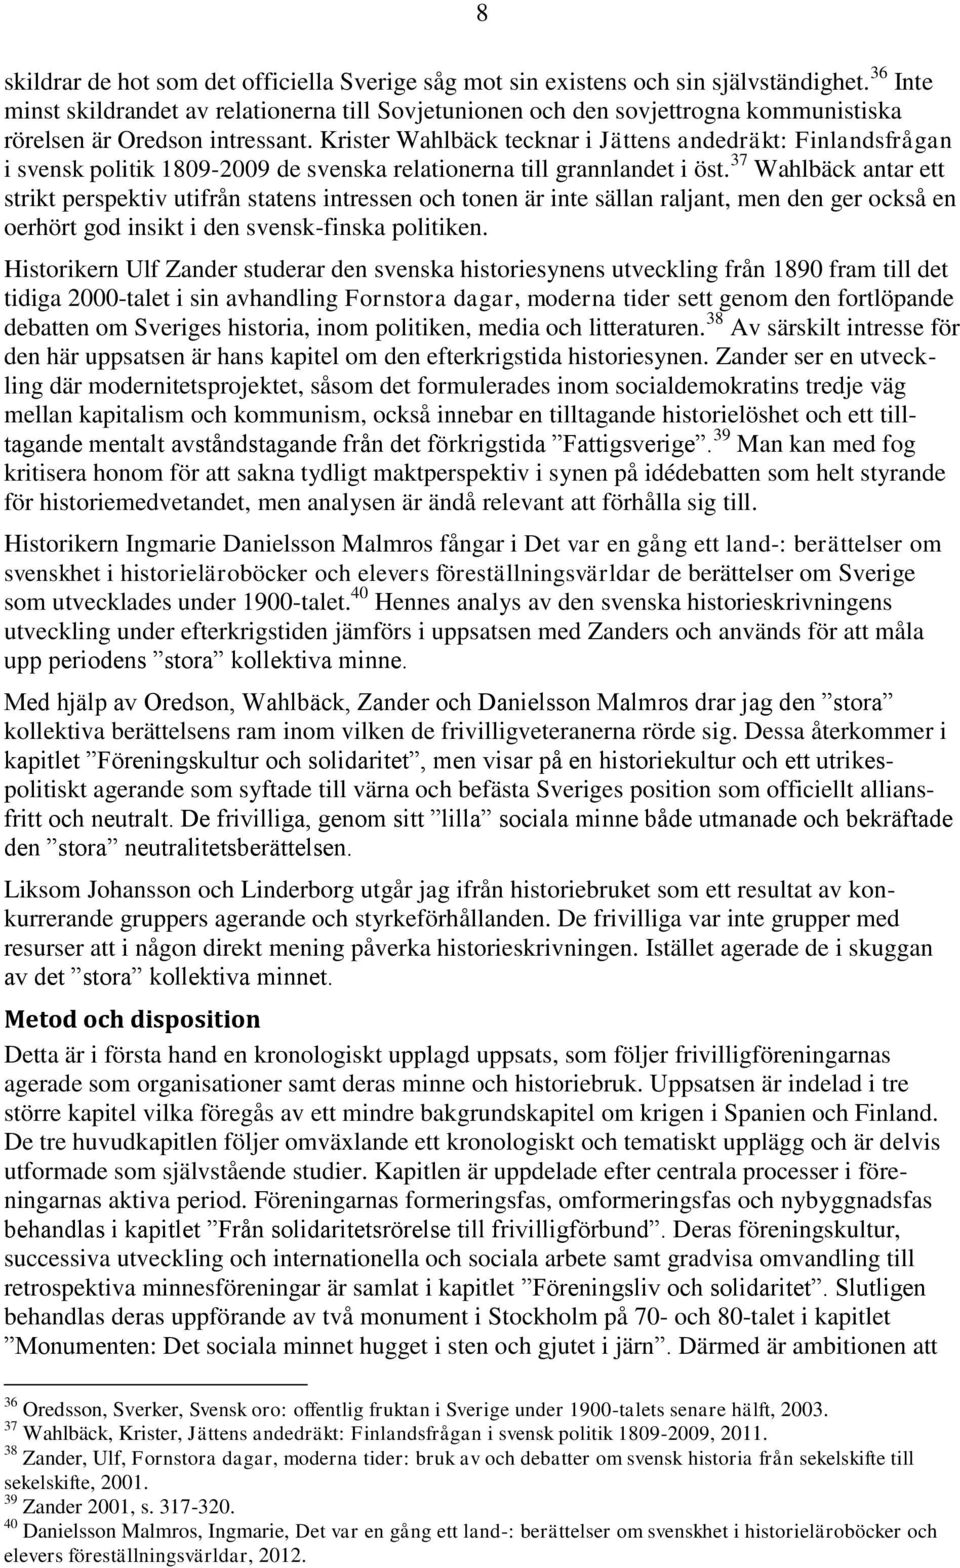 Krister Wahlbäck tecknar i Jättens andedräkt: Finlandsfrågan i svensk politik 1809-2009 de svenska relationerna till grannlandet i öst.